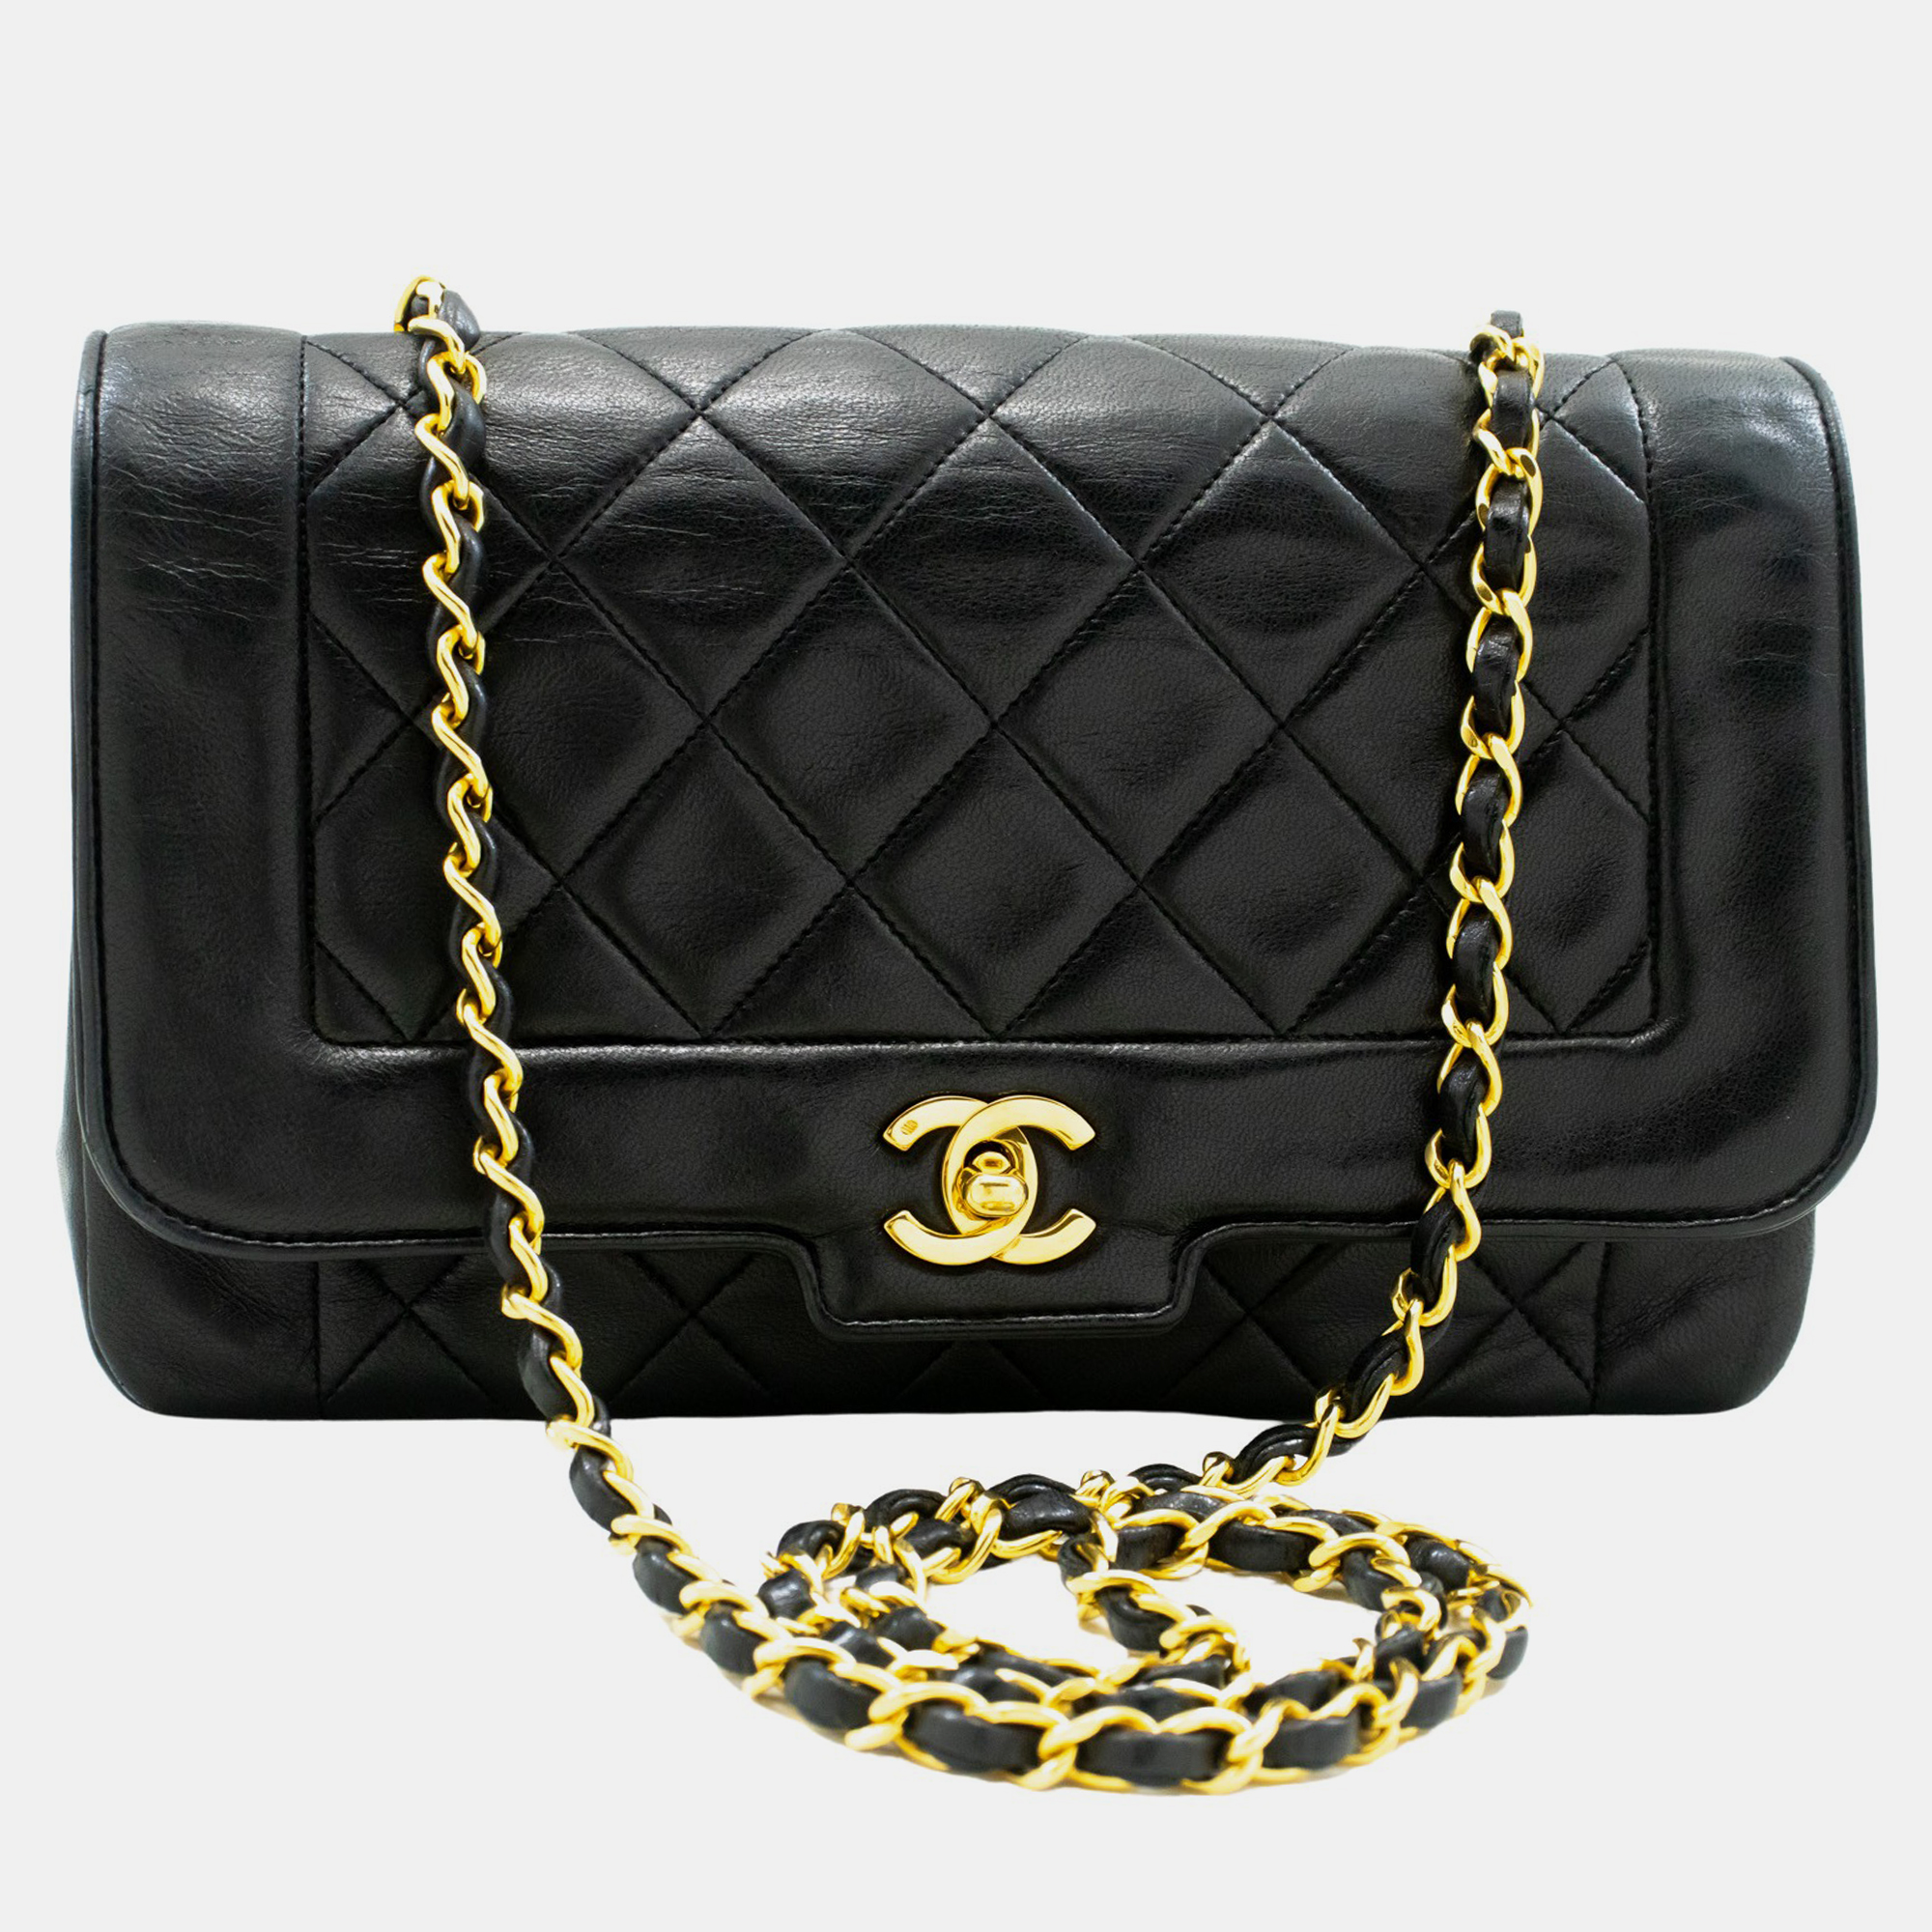 Chanel black leather vintage diana flap bag